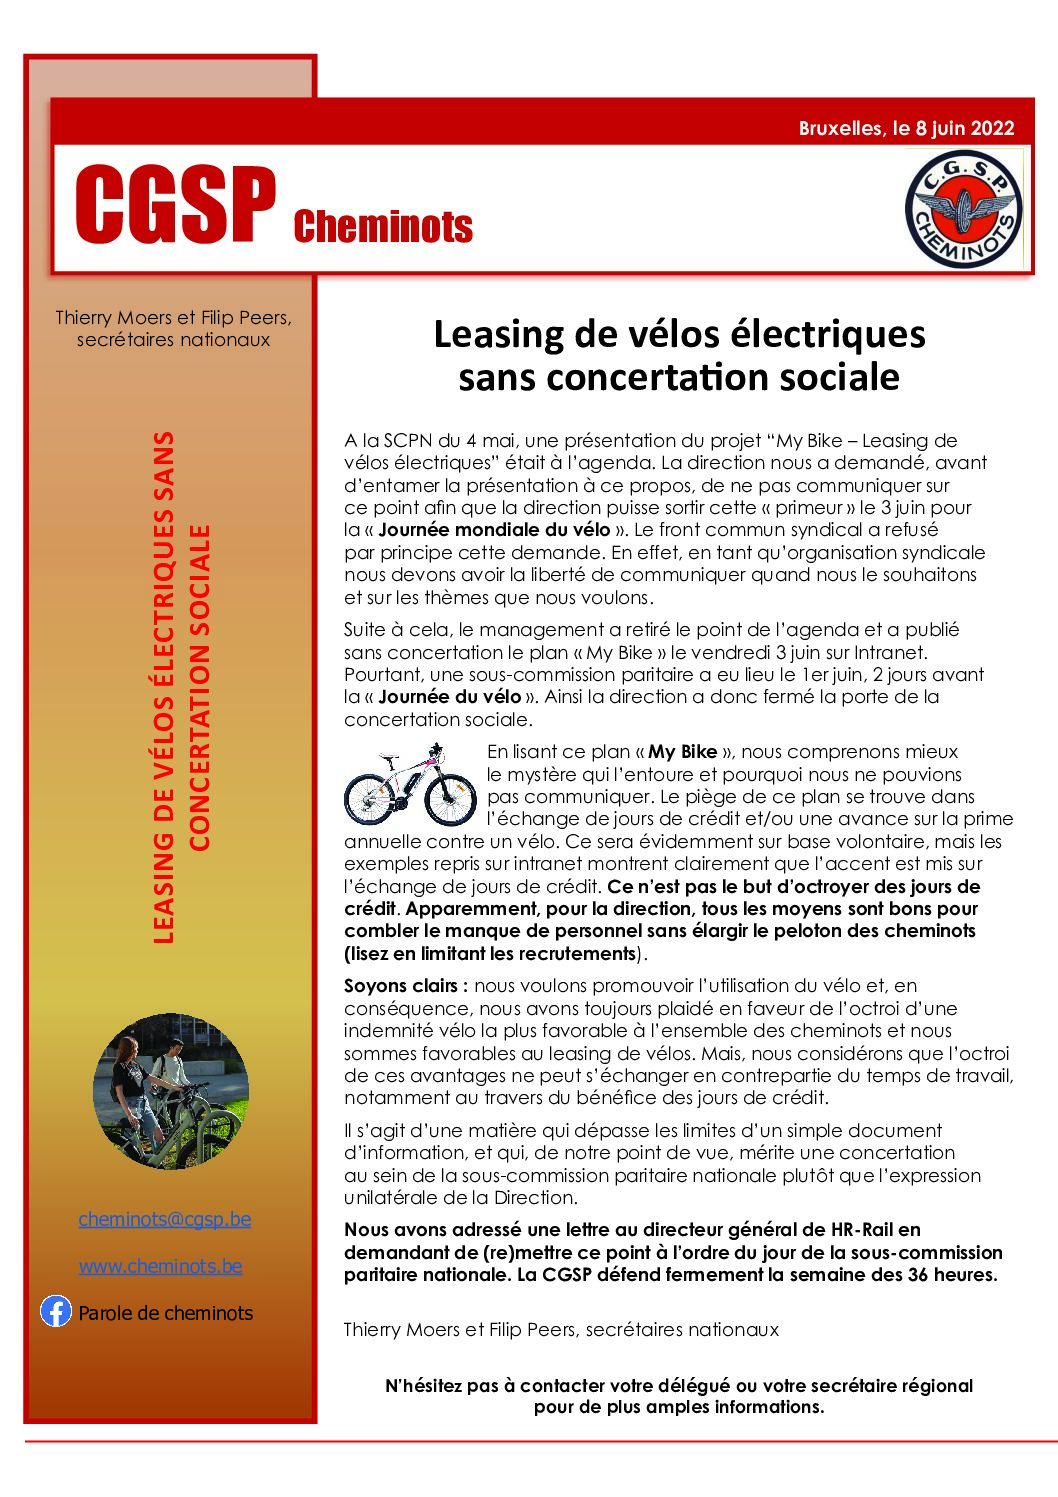 Leasing de vélos électriques sans concertation sociale